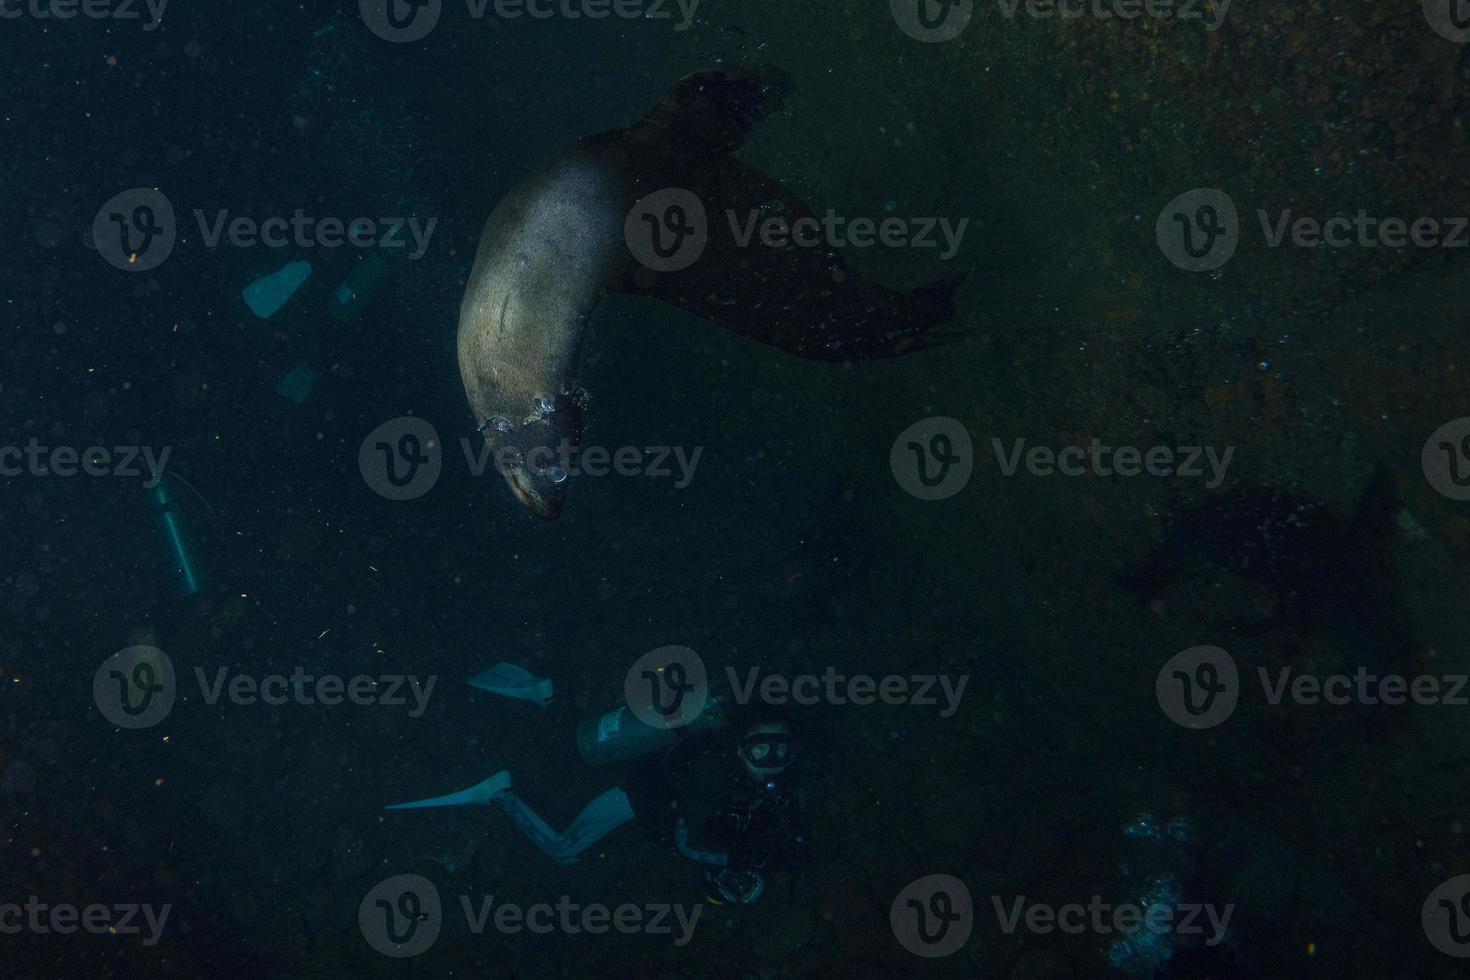 mare Leone foca subacqueo mentre immersione galapagos foto